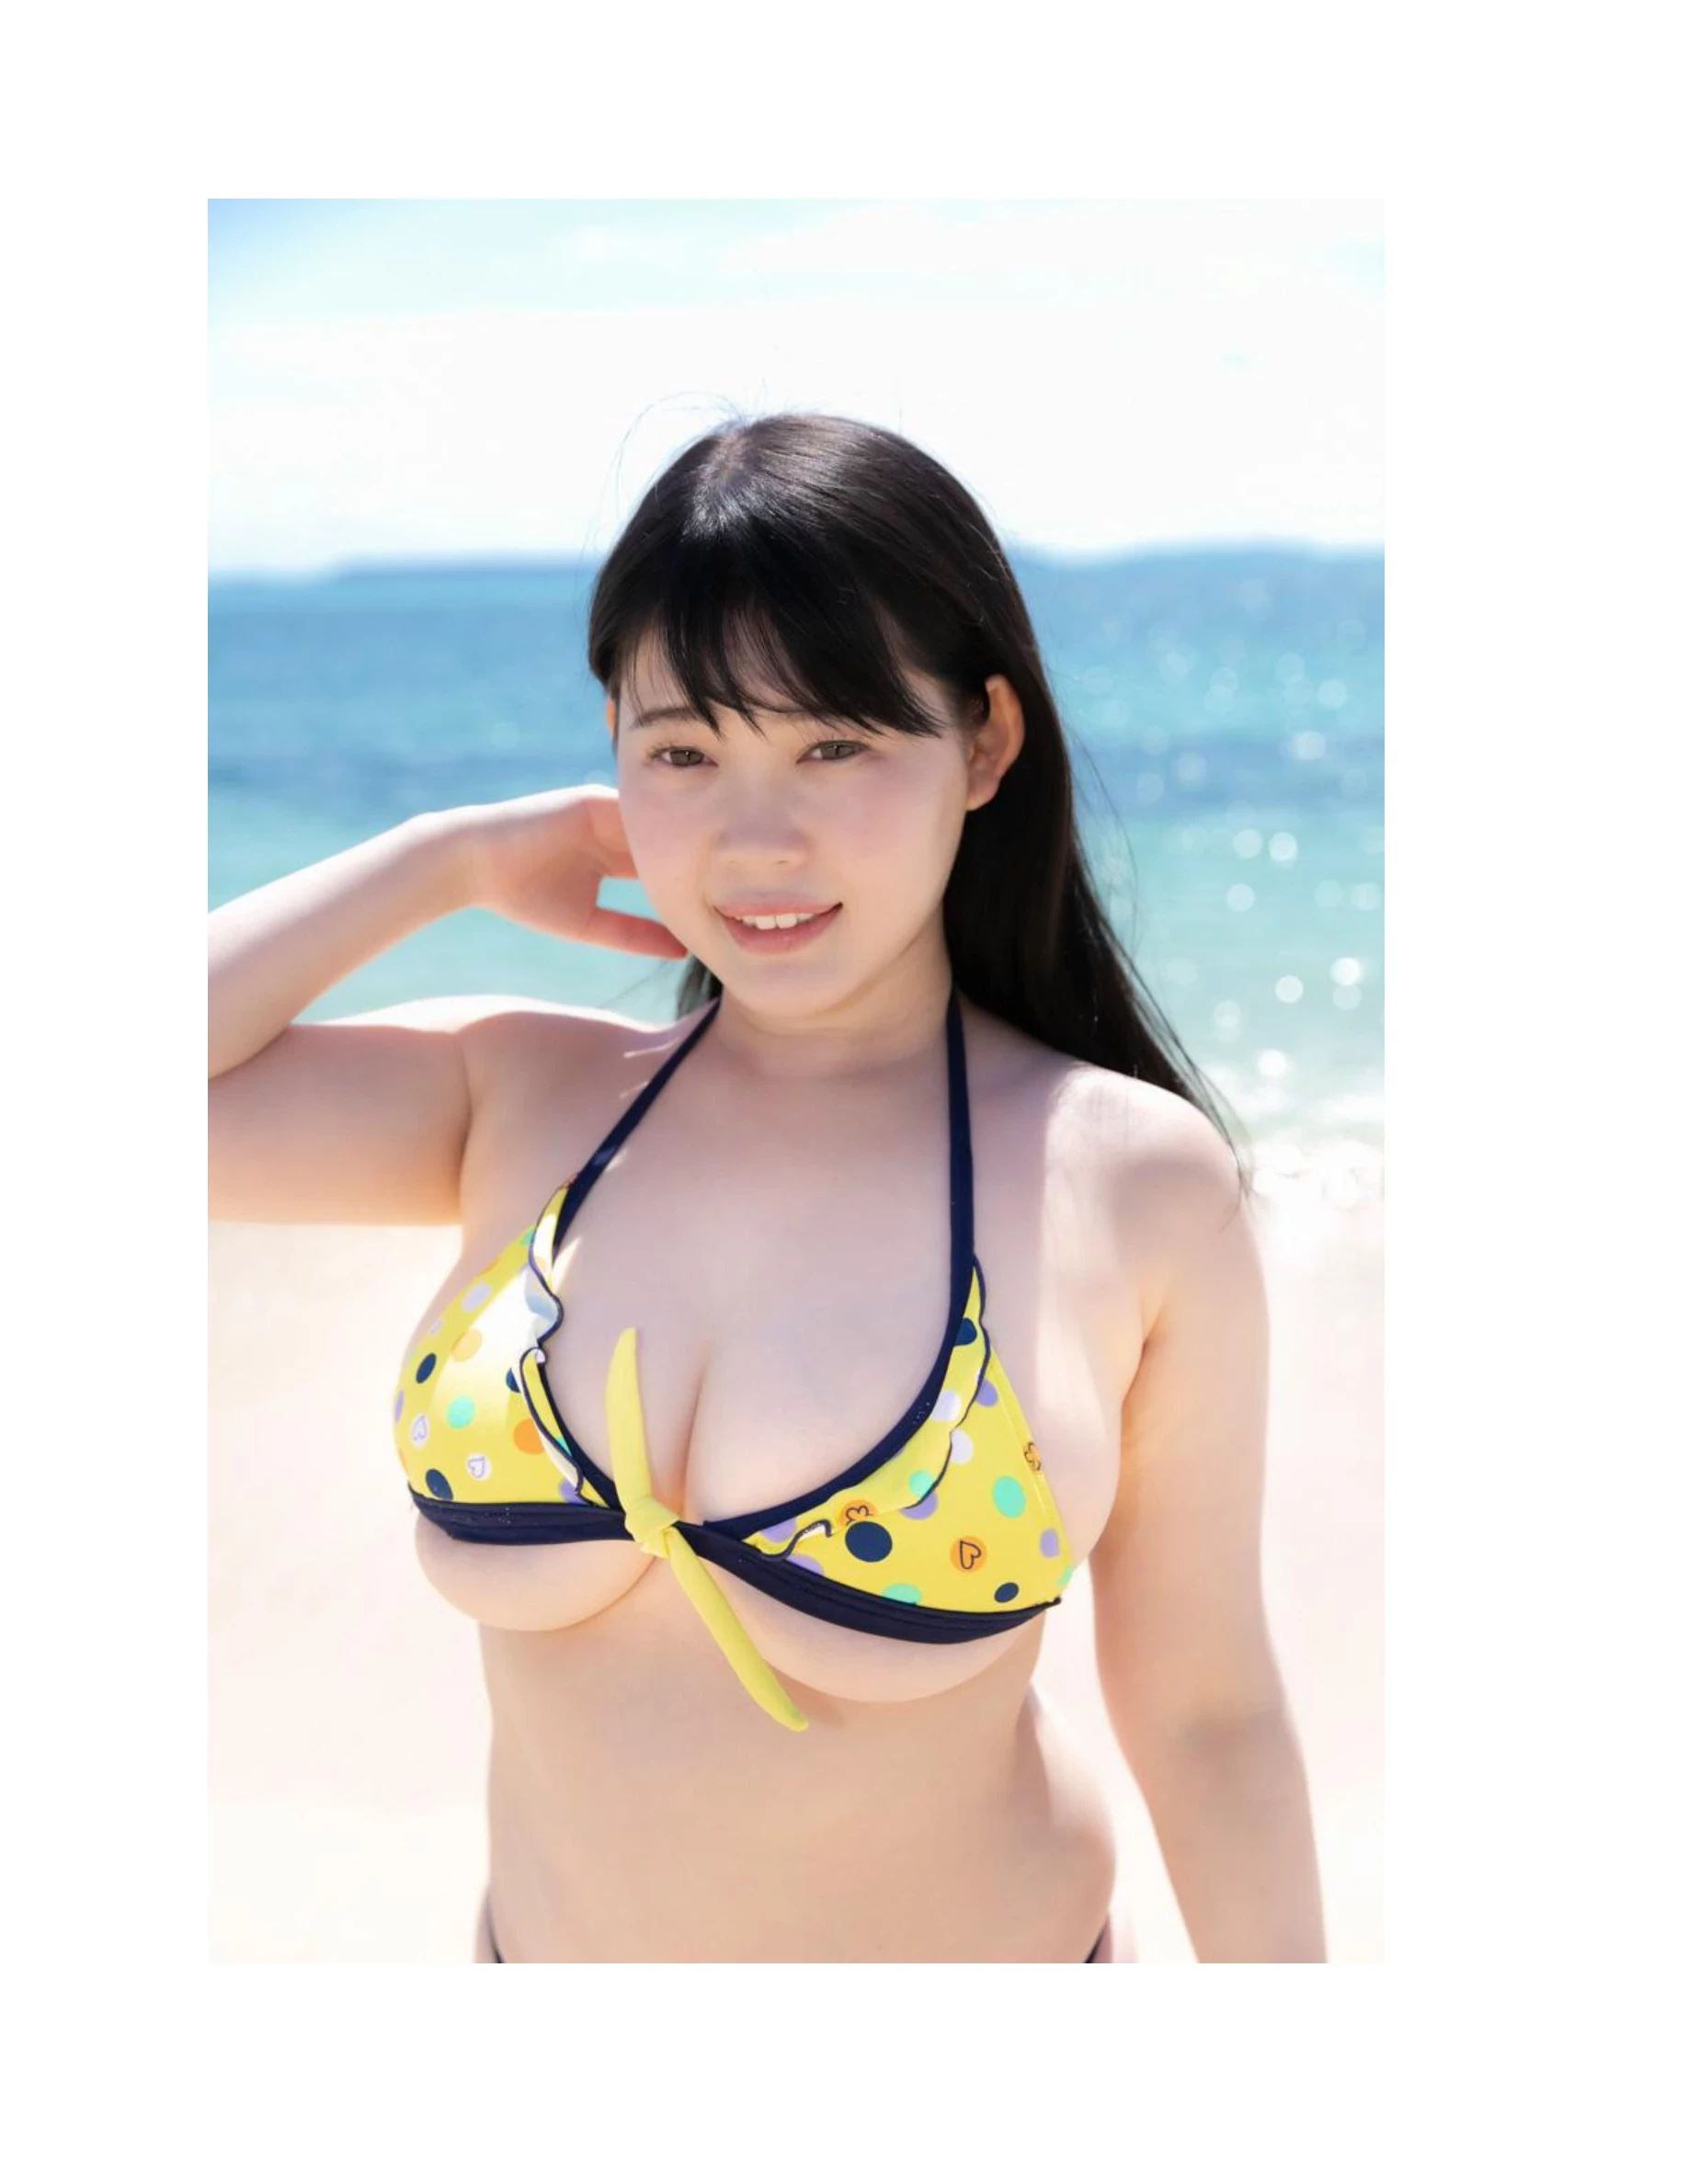 伊川愛梨 卒業旅行 夏 寫真集 J罩杯偶像美少女傳説-456